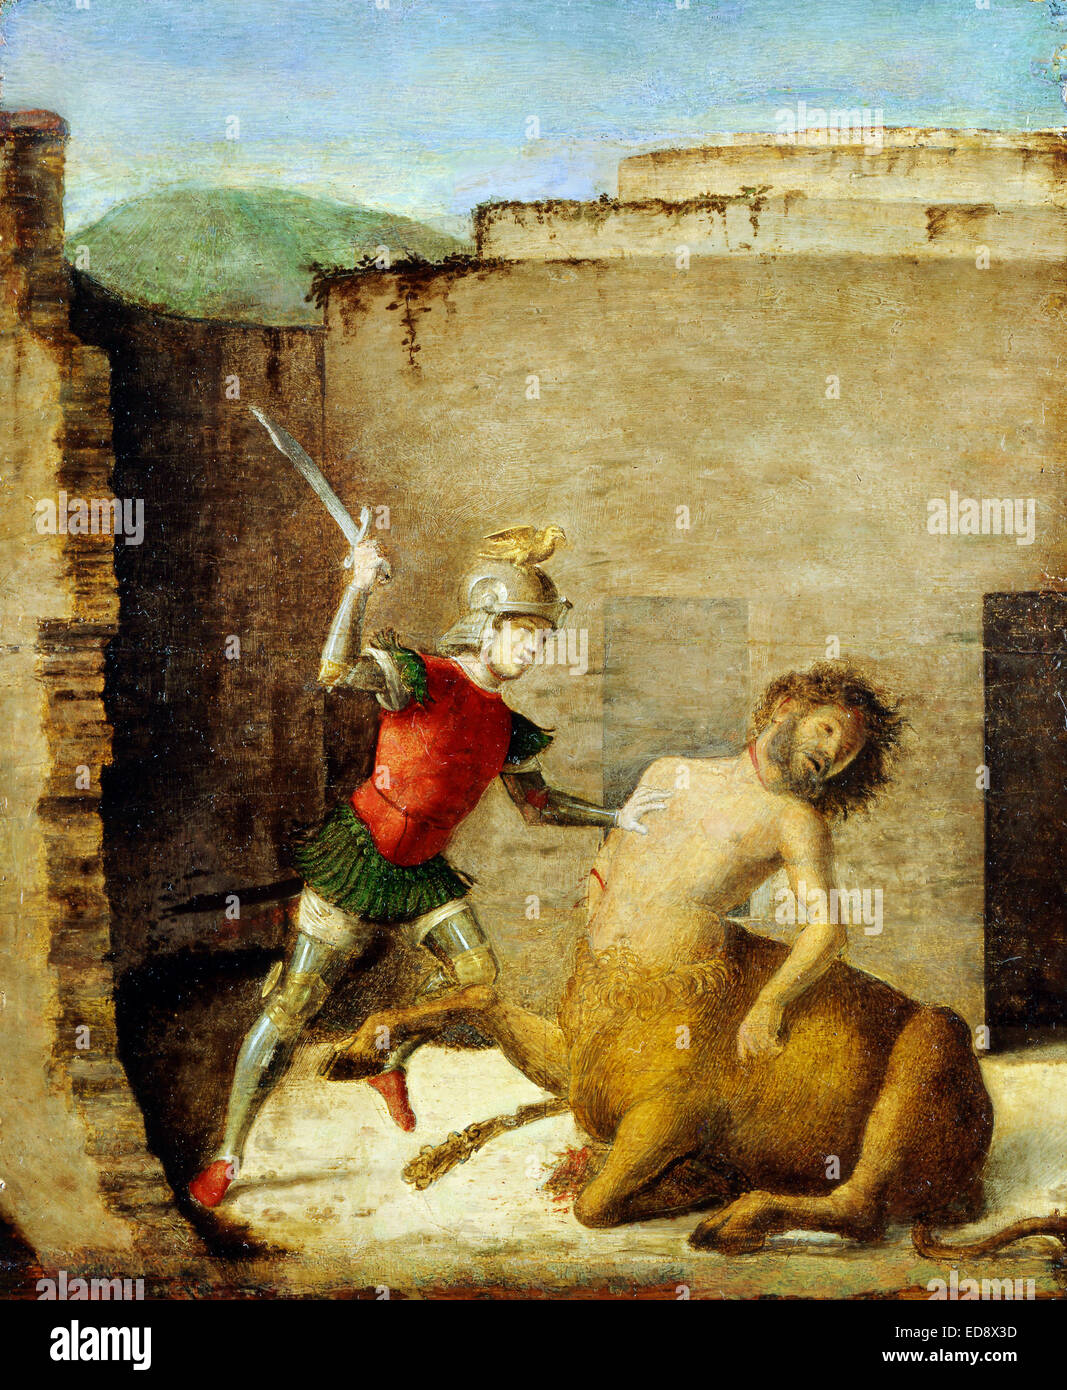 Giovanni Battista Cima da Conegliano, Thésée tuant le minotaure 1505 bord. Museo Poldi Pezzoli, Milan, Italie. Banque D'Images